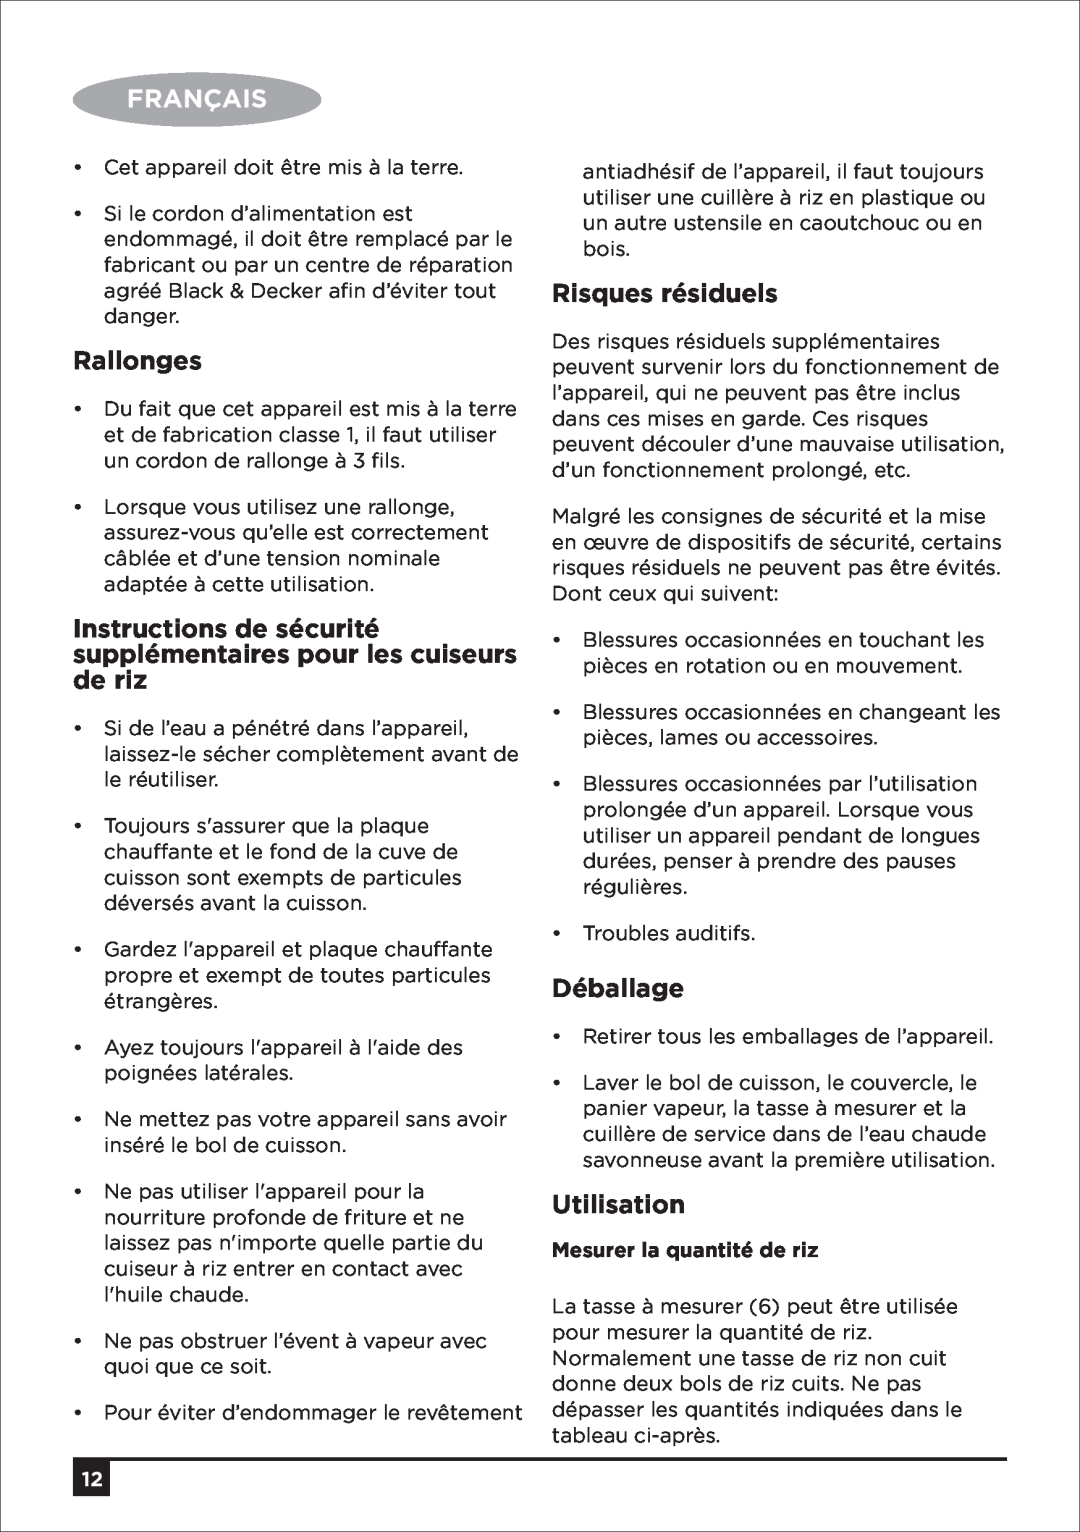 Black & Decker RC650 RC1050 RC1850 RC1860 RC2850 manual Rallonges, Risques résiduels, Déballage, Utilisation, Français 